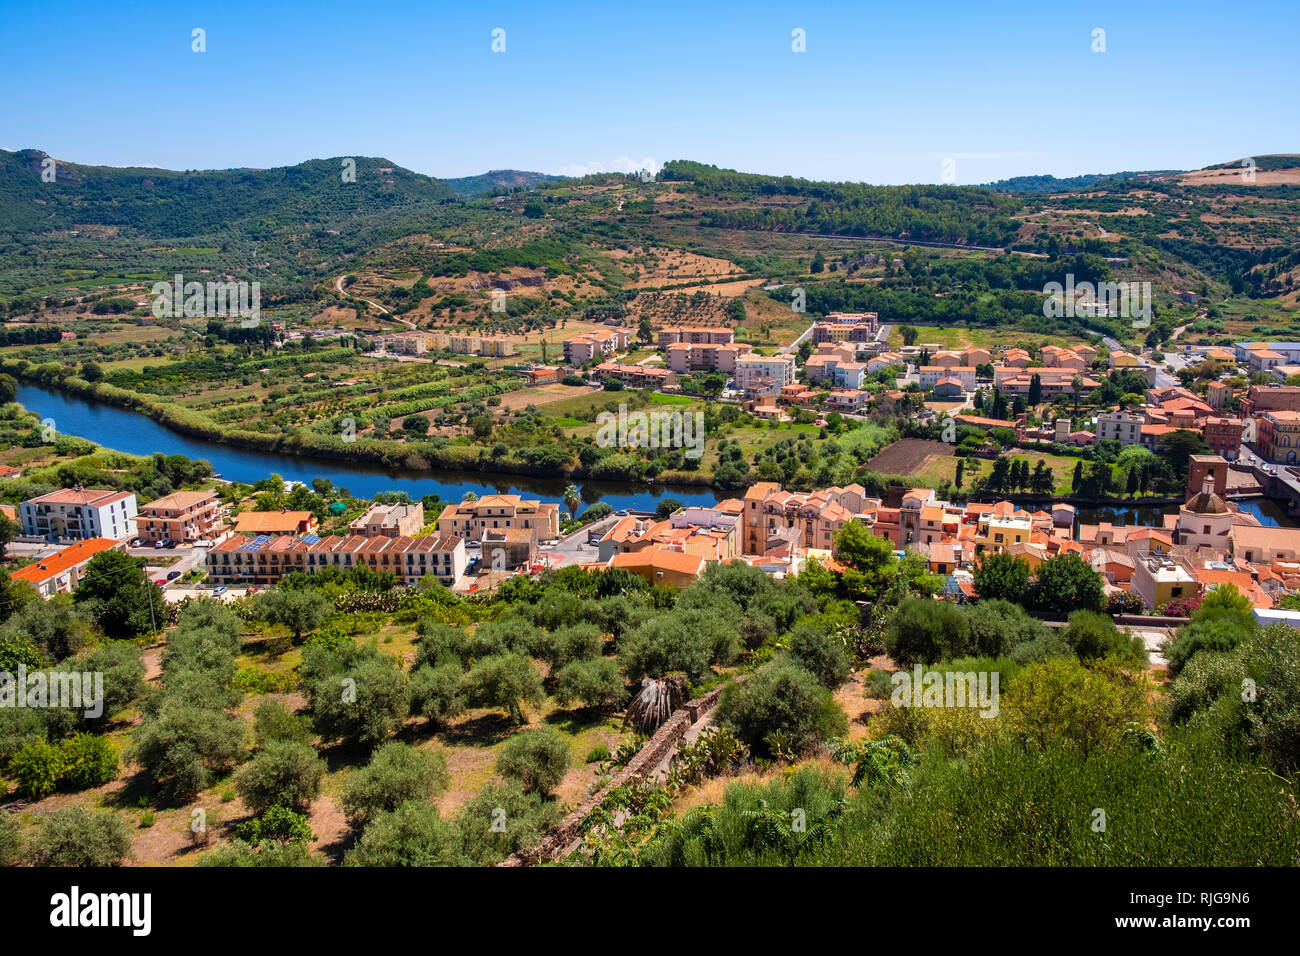 Bosa, Sardegna / Italia - 2018/08/13: vista panoramica della città di Bosa dal fiume Temo e colline circostanti visto dal castello Malaspina hill Foto Stock